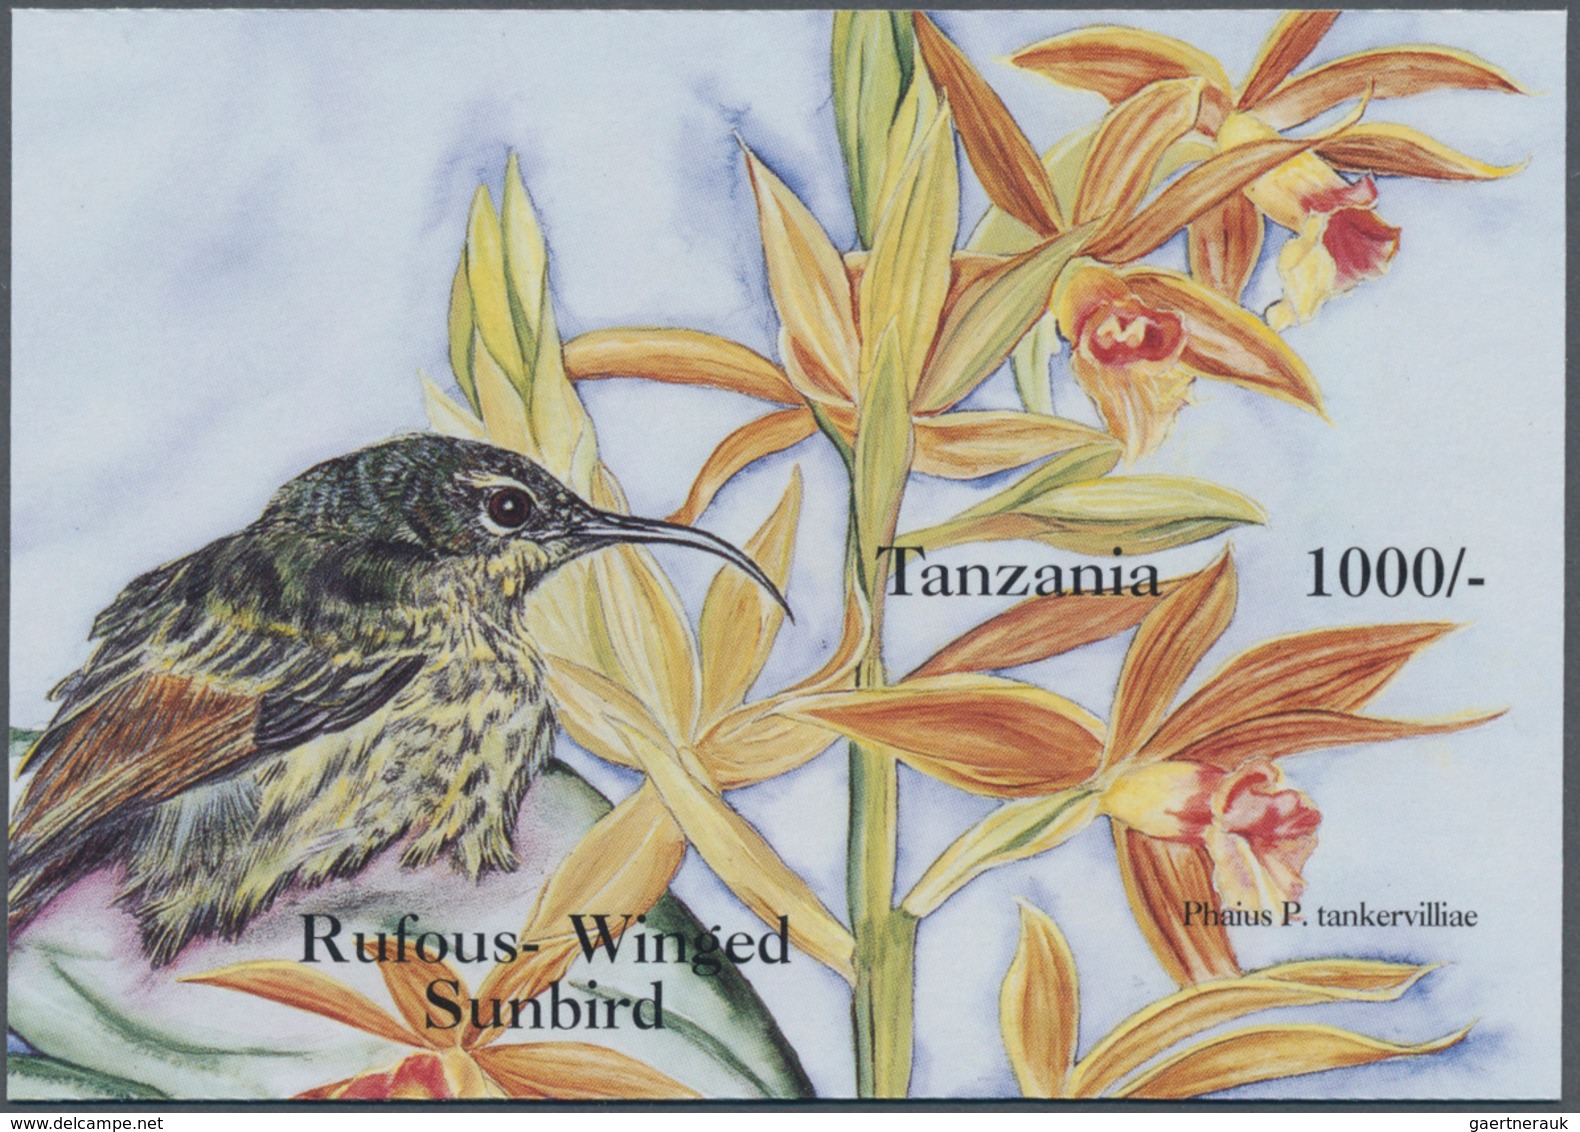 Thematik: Flora-Orchideen / Flora-orchids: 1994, Tanzania. Imperforate Souvenir Sheet (1 Value) From - Orchideeën